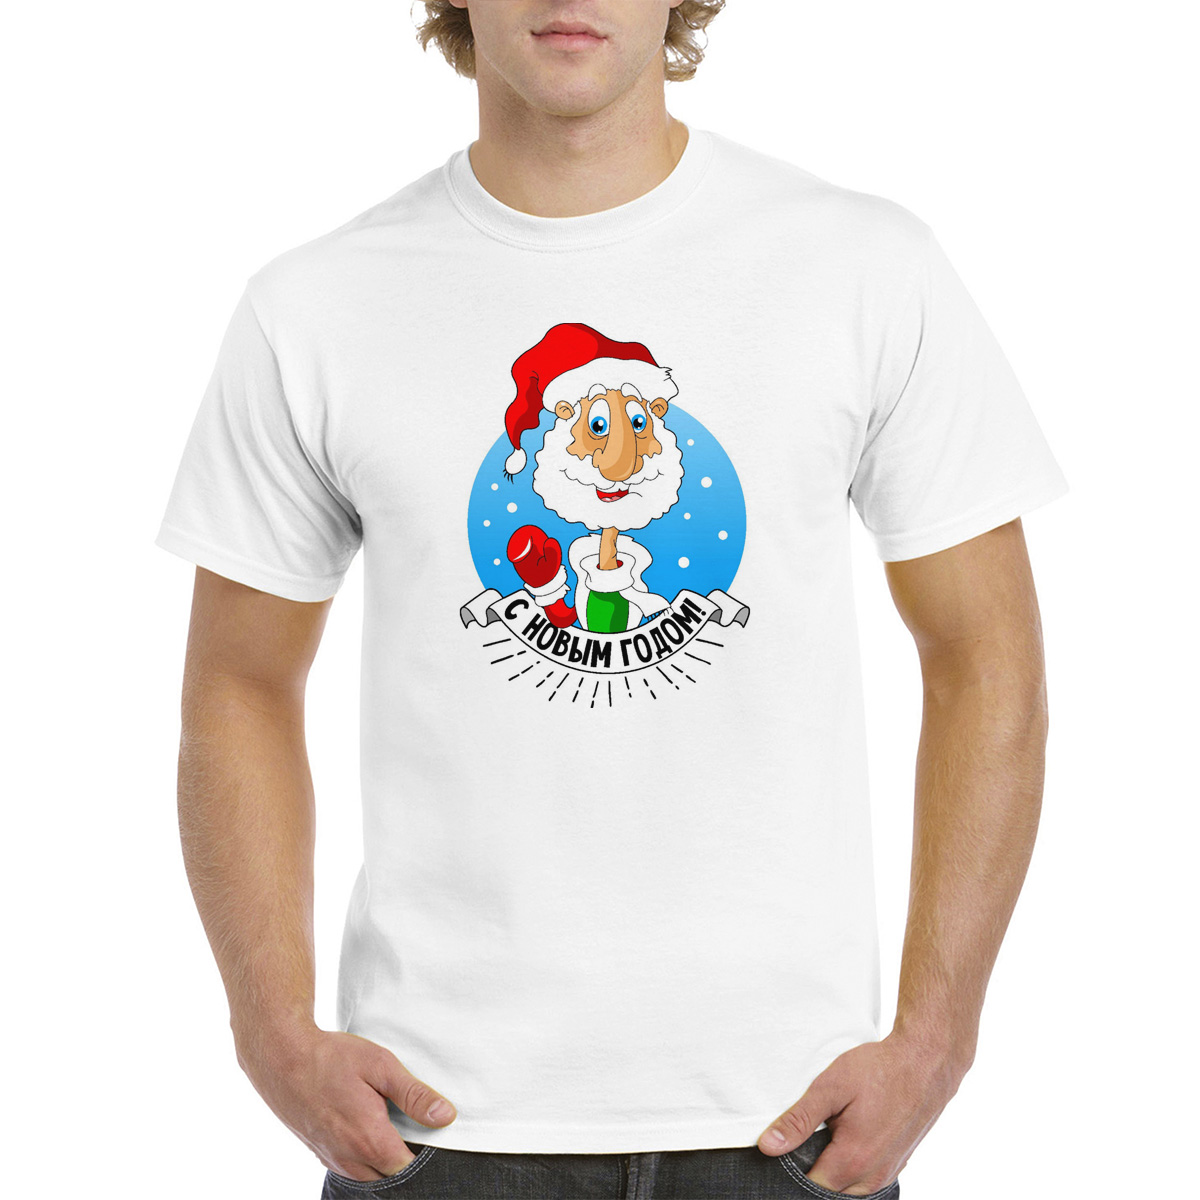 Мужская белая футболка CoolPodarok M0113712, размер 58 по российской шкале.